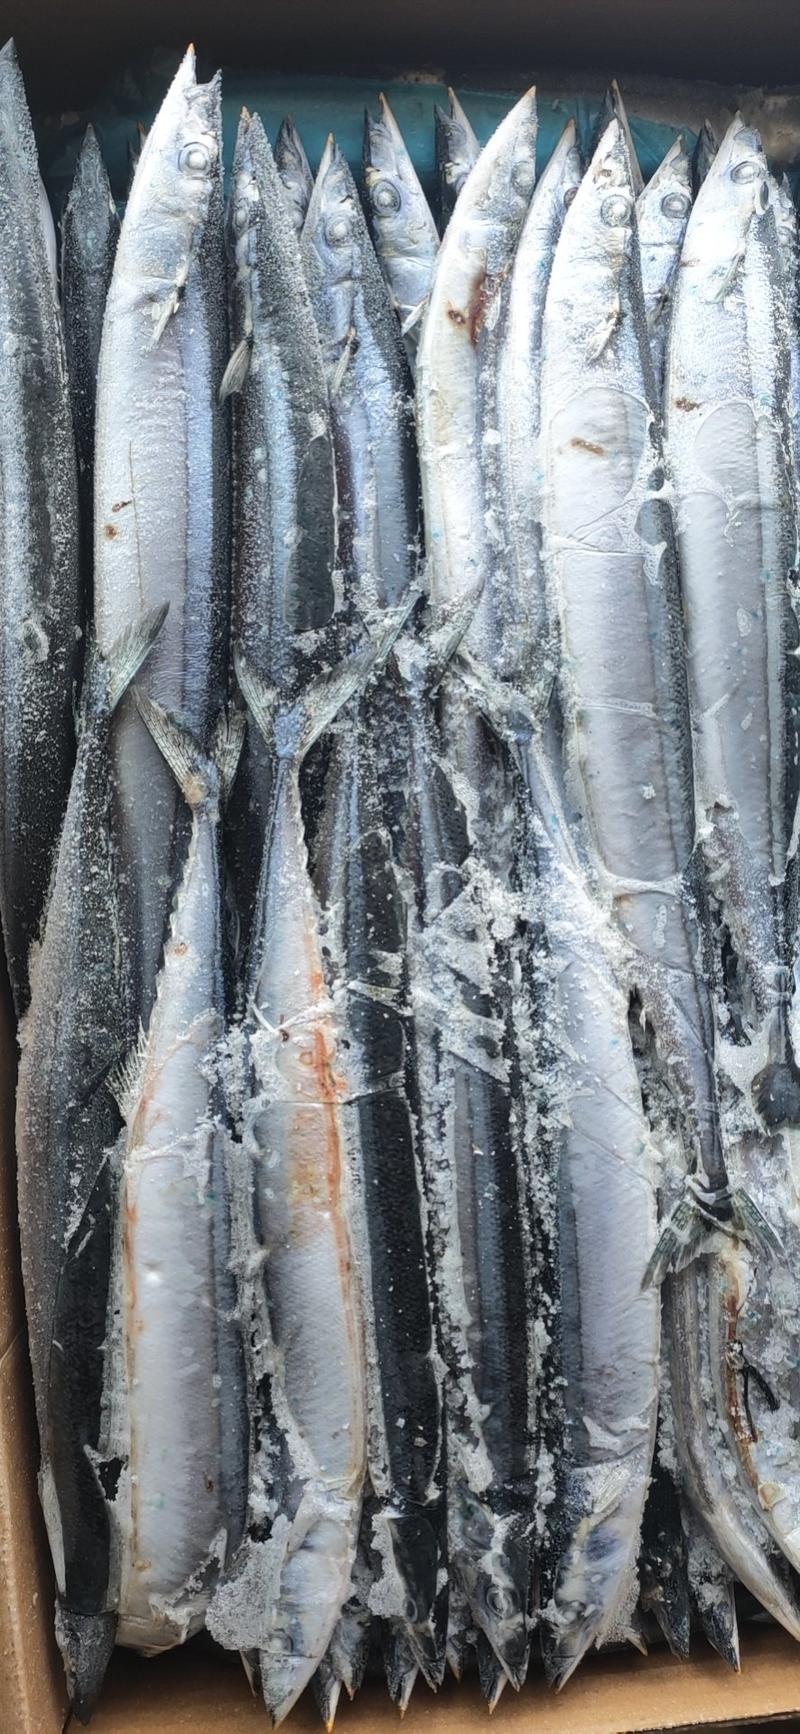 新鲜冷冻秋刀鱼新鲜竹刀鱼秋刀鱼鲜新冷冻深海海鱼烧烤食材